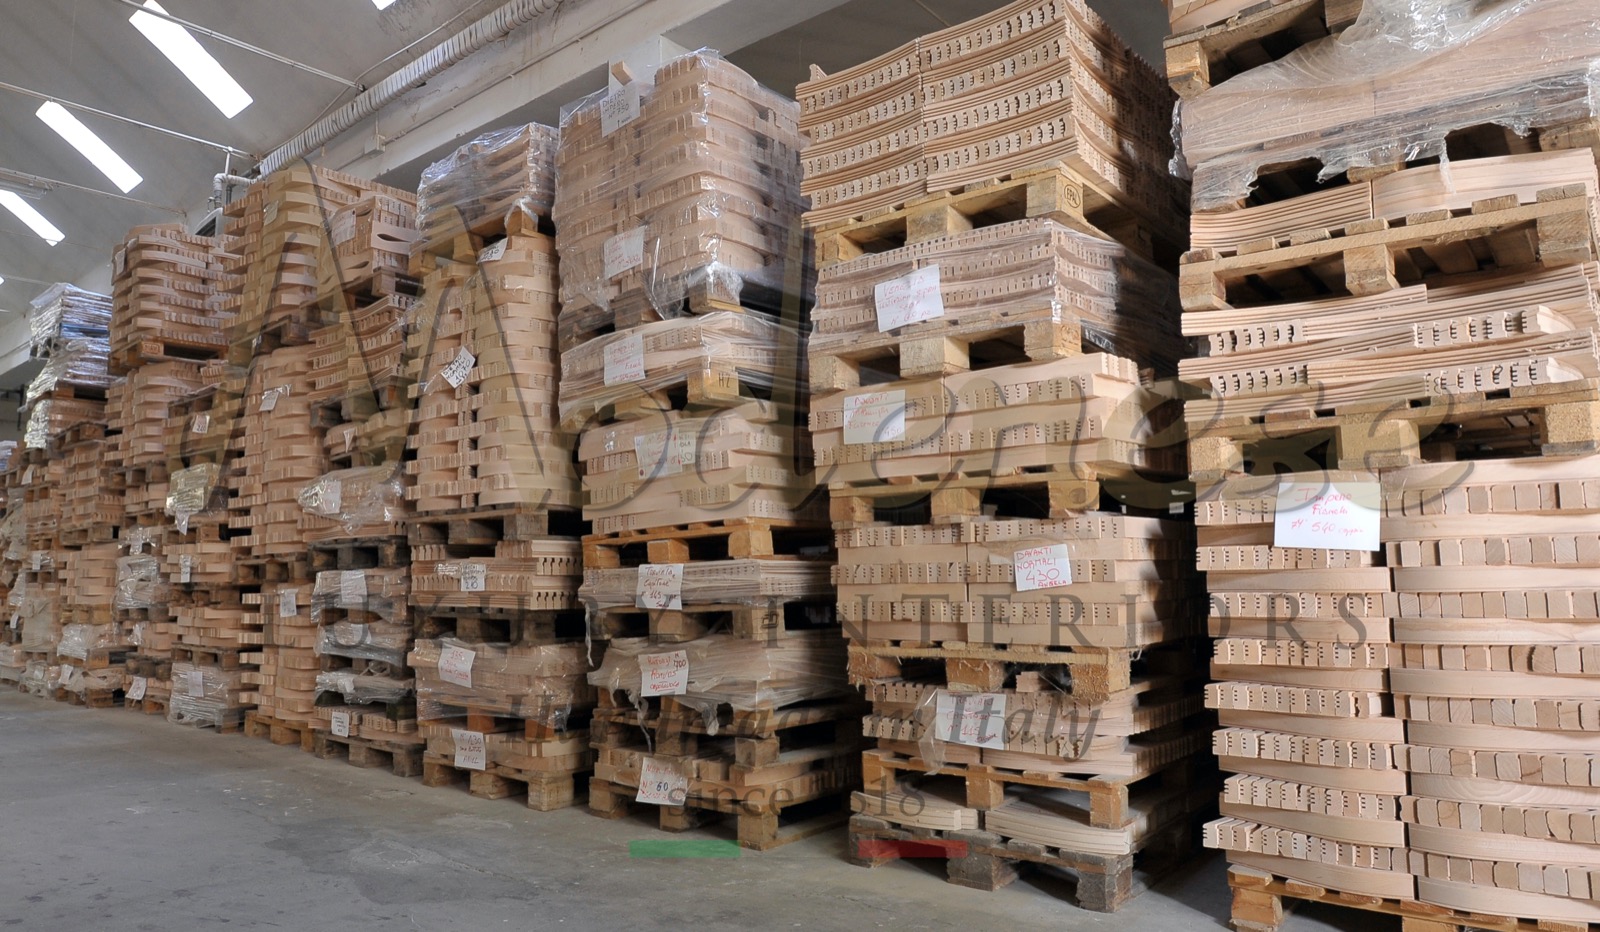 rafinované elegantní materiály požadavky na vkus pozornost ke klientovi ruční výroba italský klasický nábytek výroba bytovýchdekorací řemeslné zpracování boiserie dřevěné panely masivní dřevo vyřezávané řezby surové struktury nejlepší prémiová kvalita personalizované